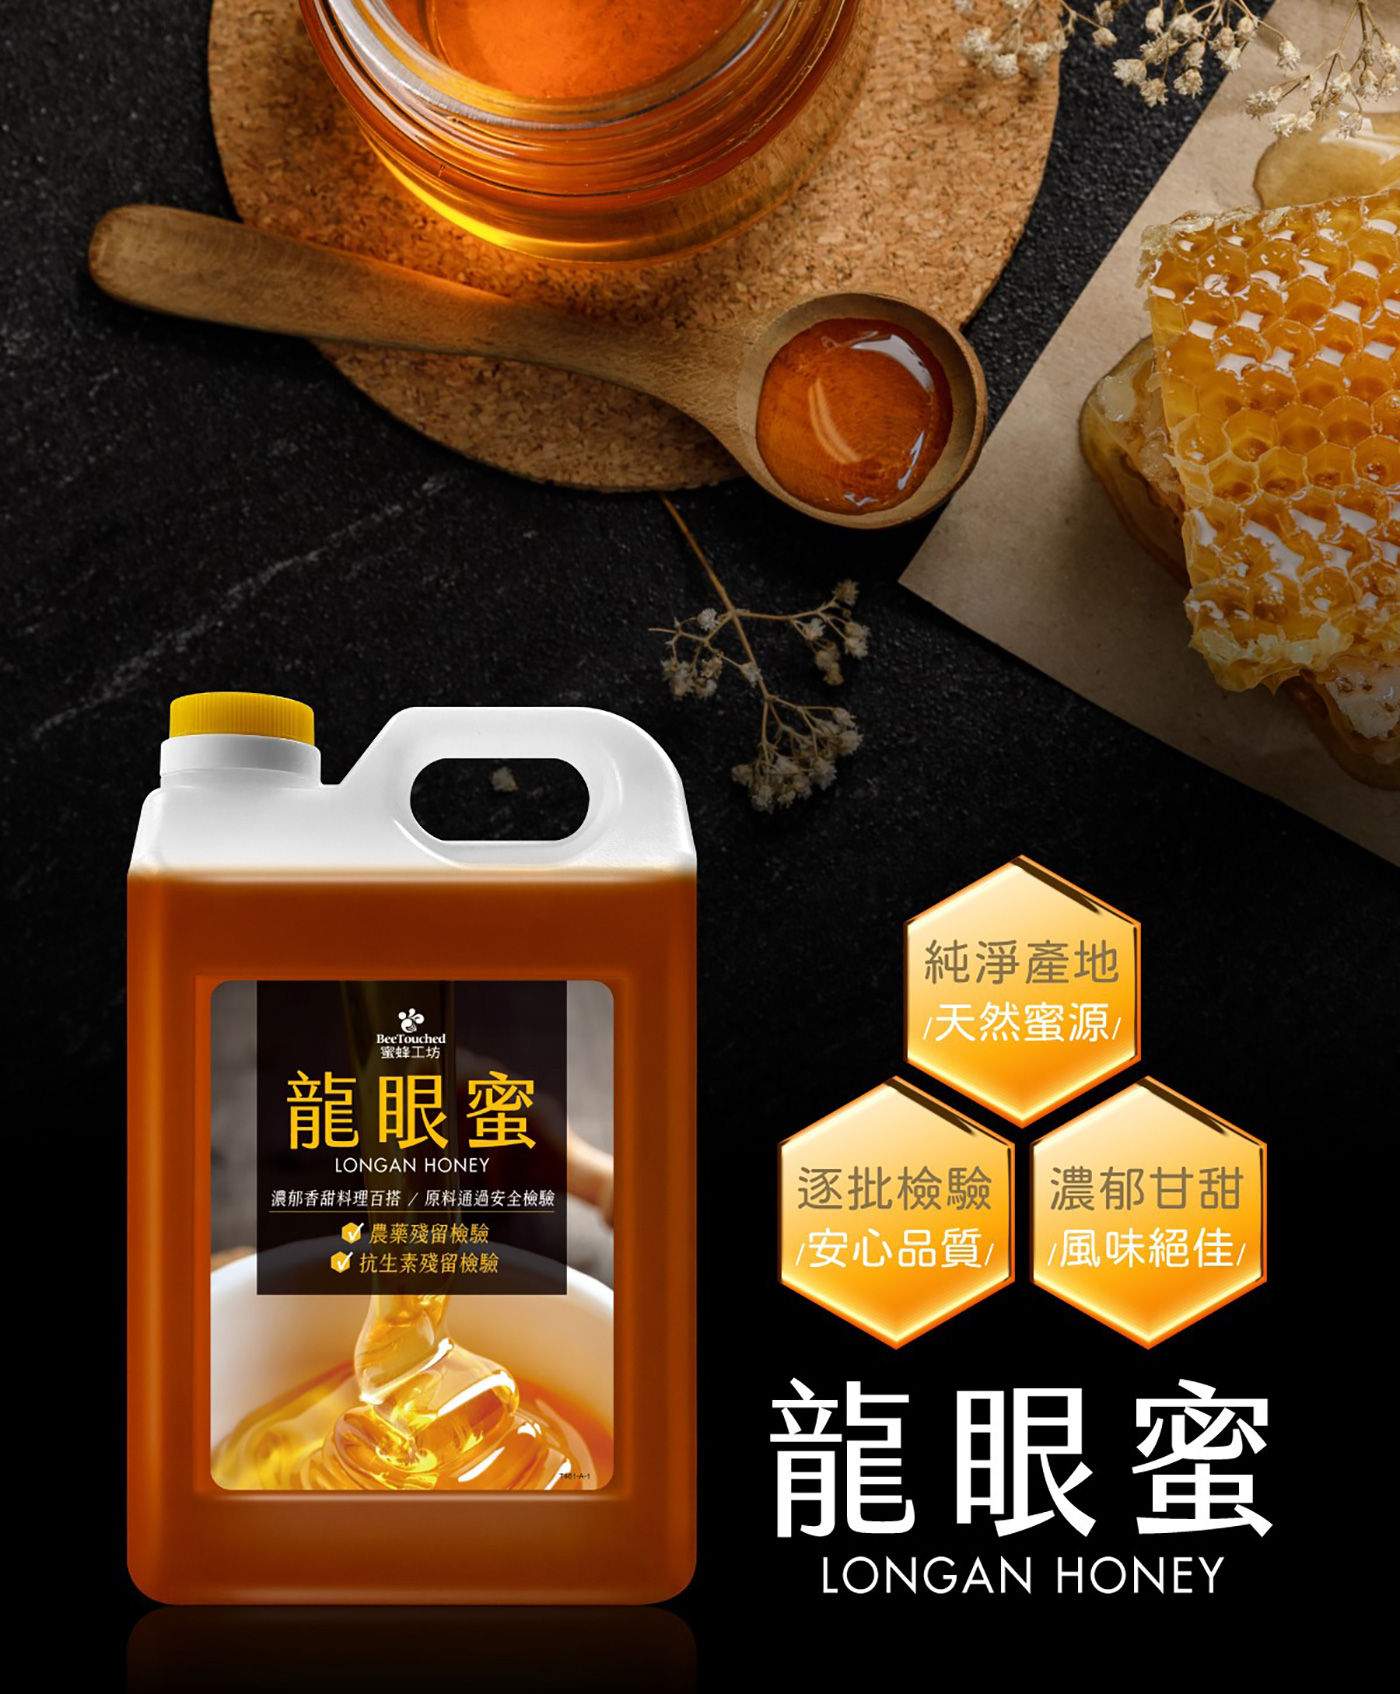 蜜蜂工坊龍眼蜜純淨產地 天然蜜源 逐批檢驗 安心品質 濃郁甘甜 風味絕佳